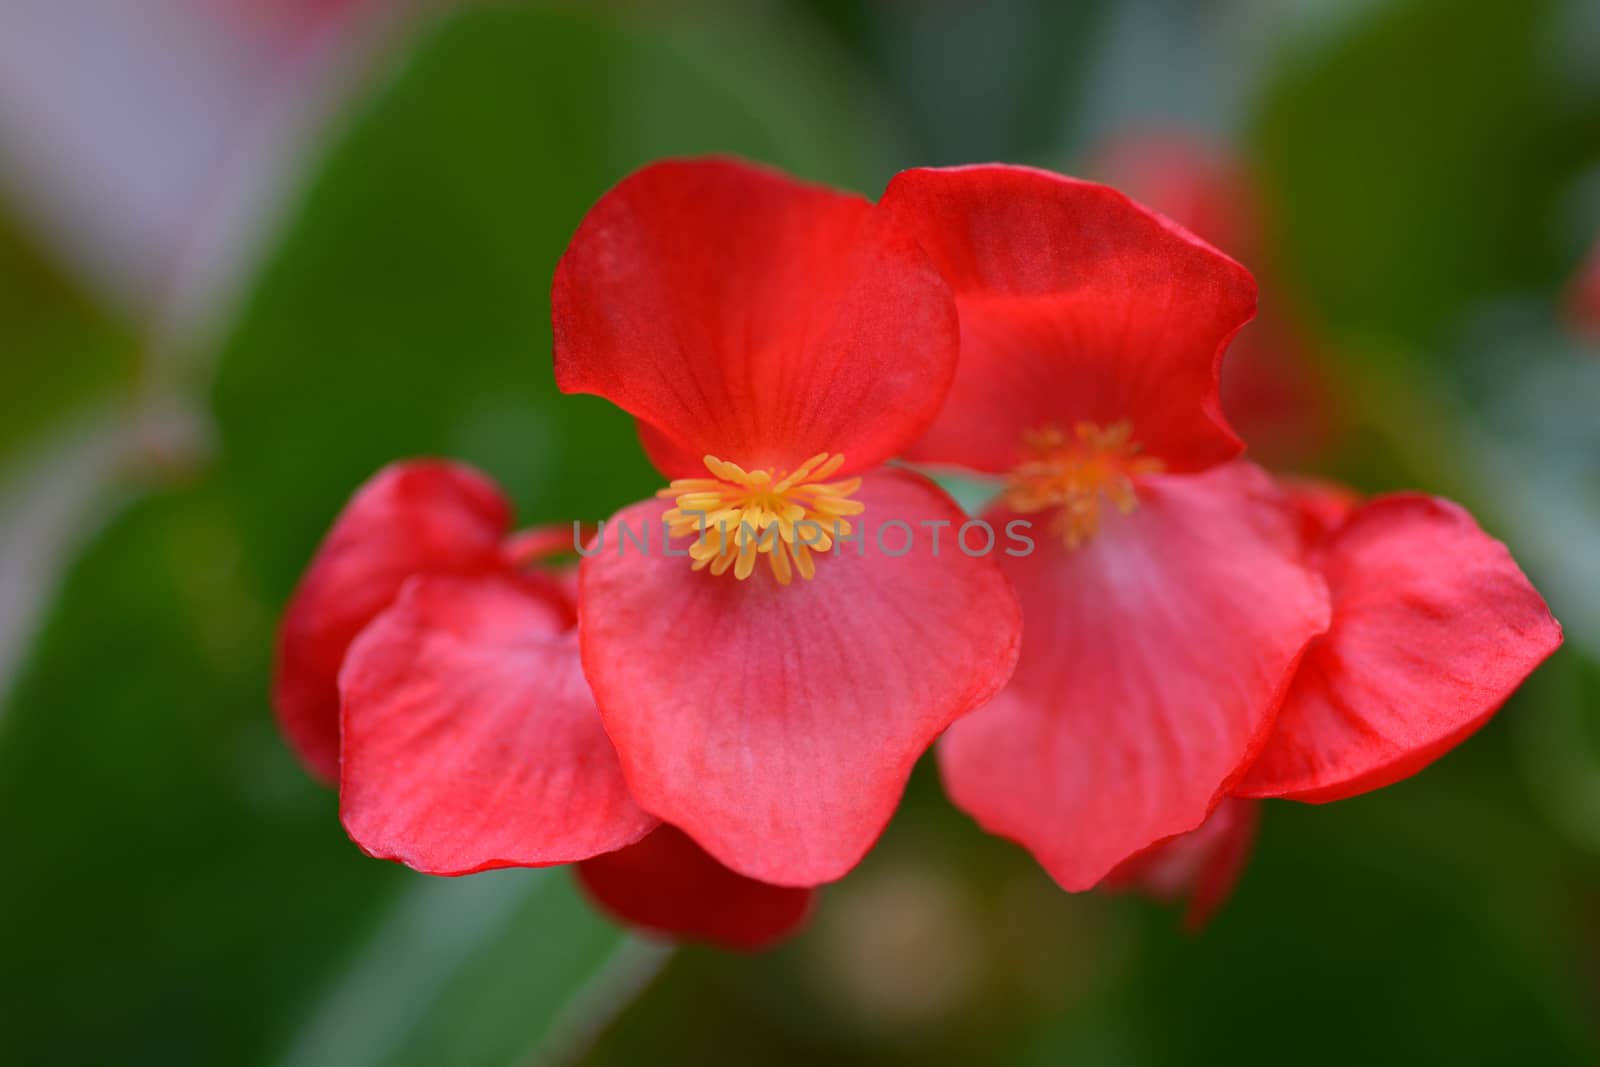 Red wax begonia - Latin name - Begonia semperflorens